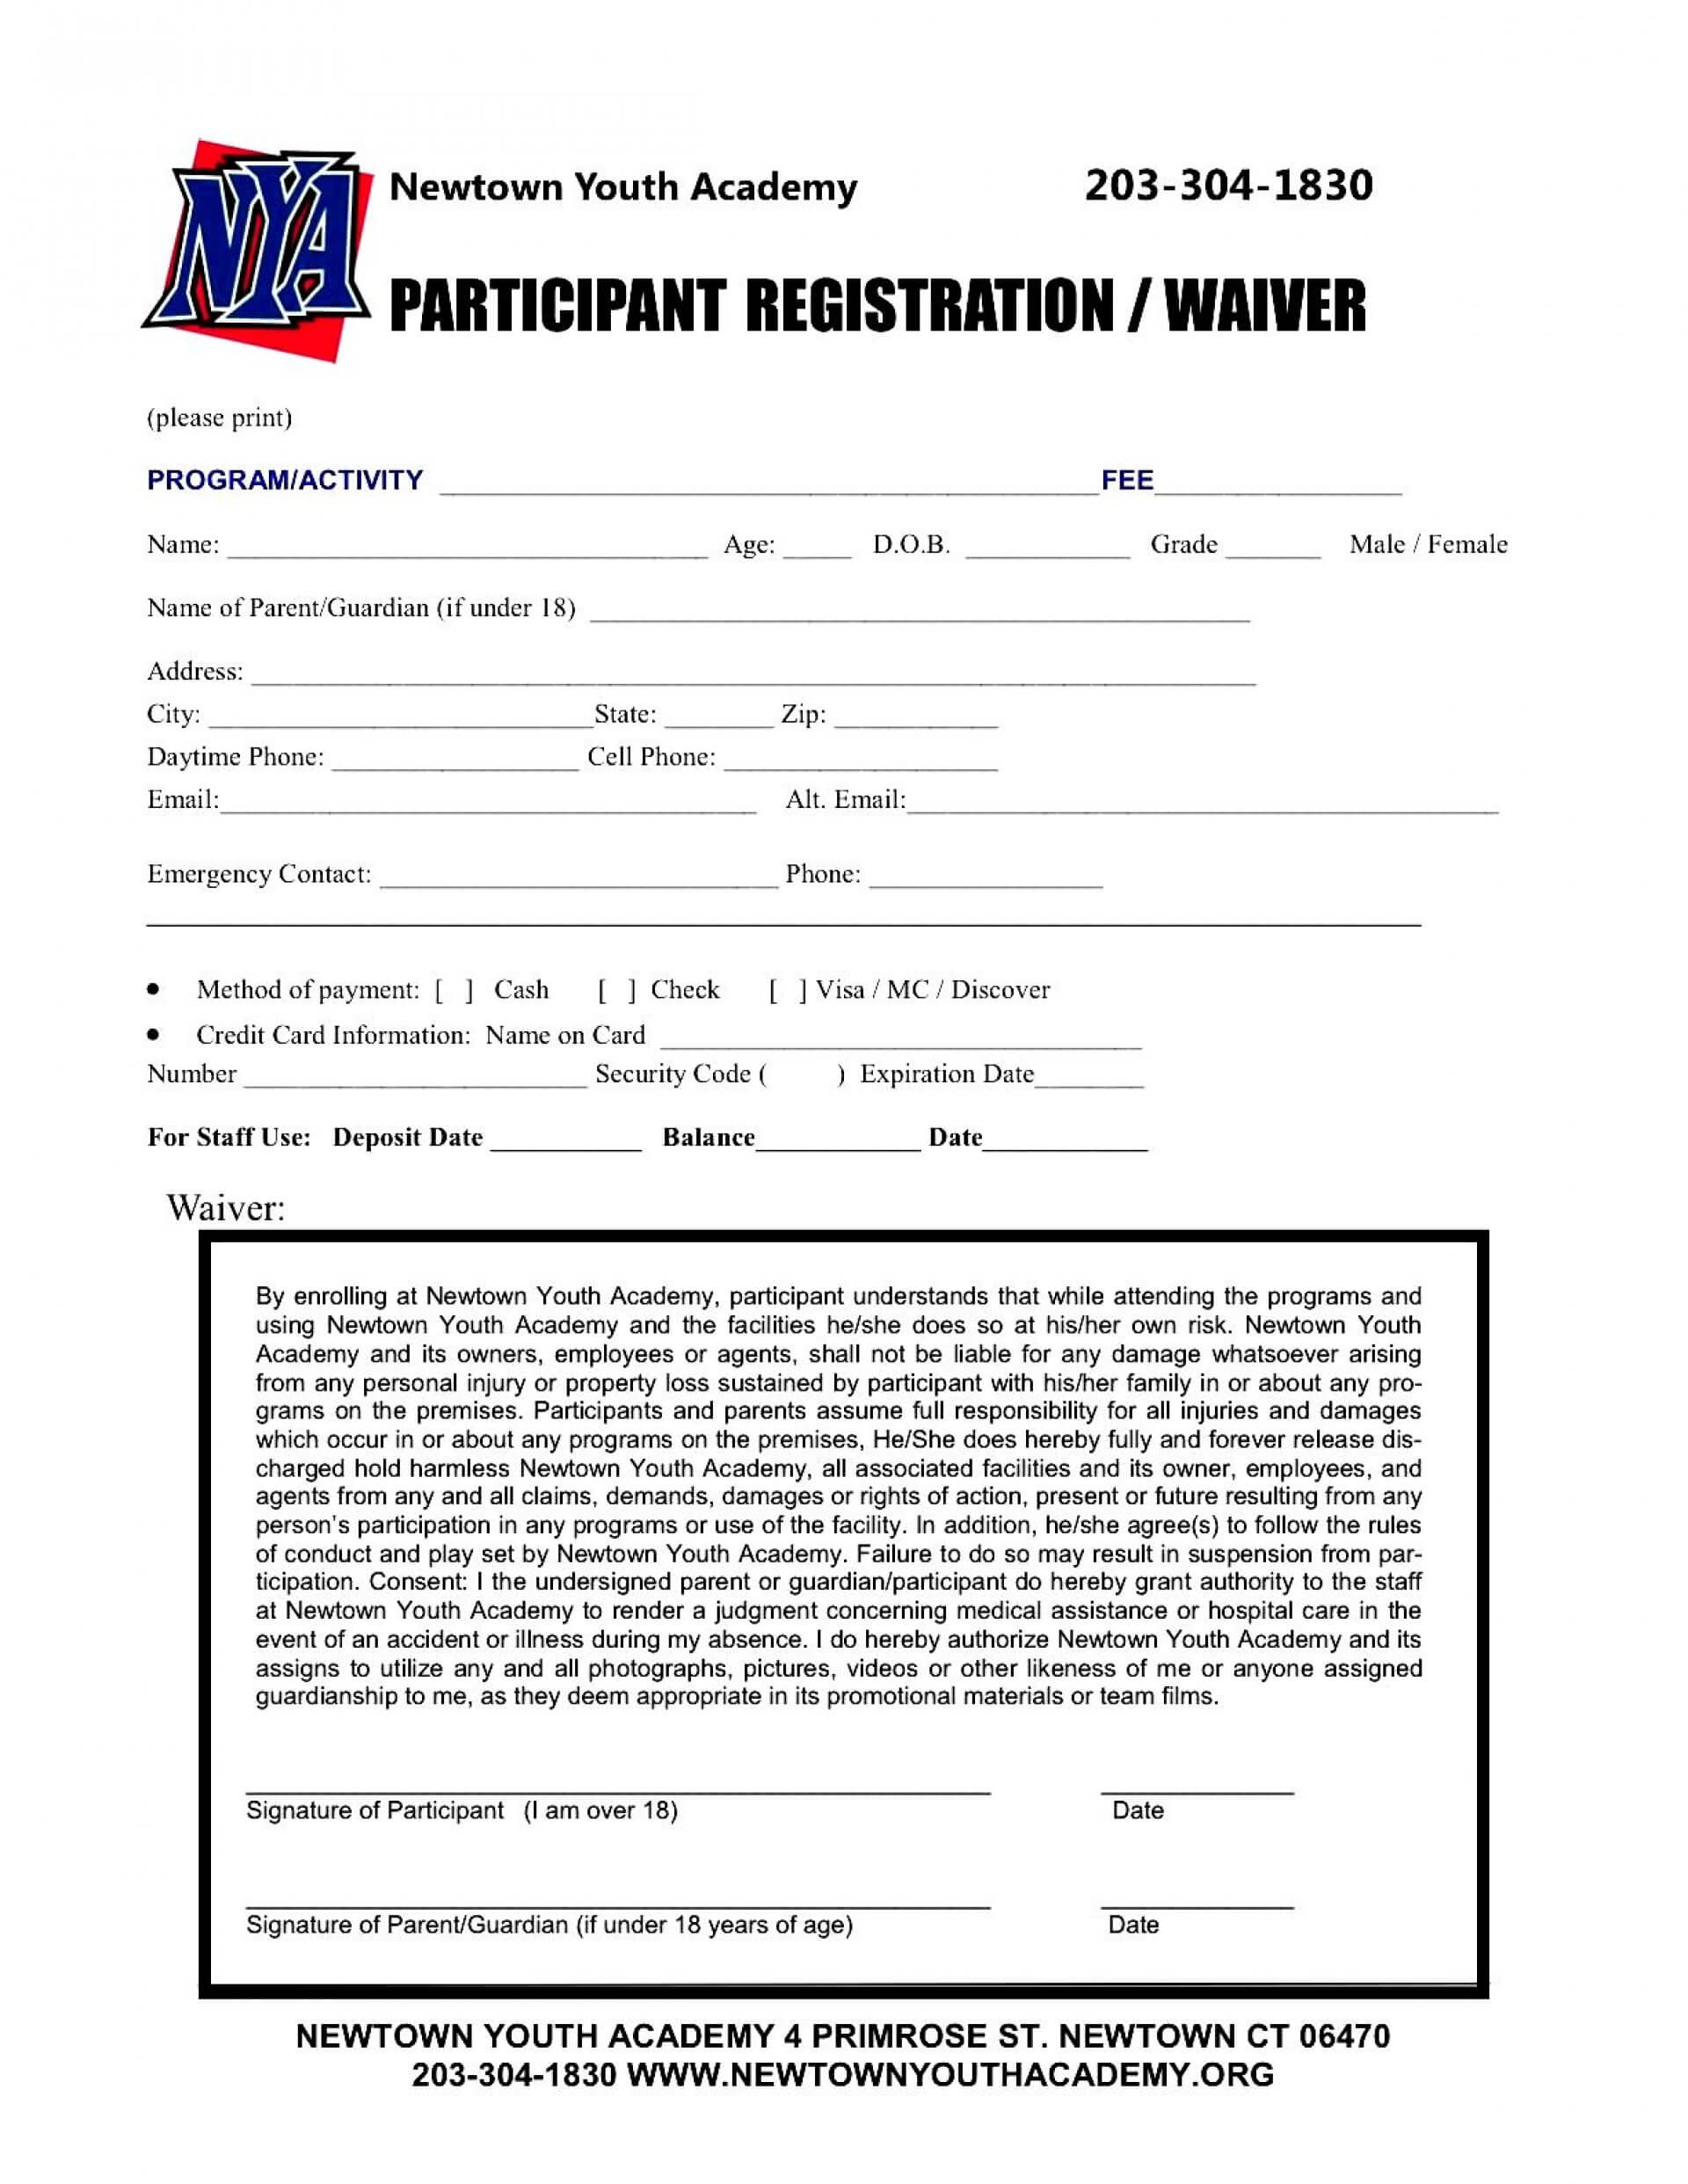 009 Large Free Printable Camp Registration Form Templates Pertaining To Camp Registration Form Template